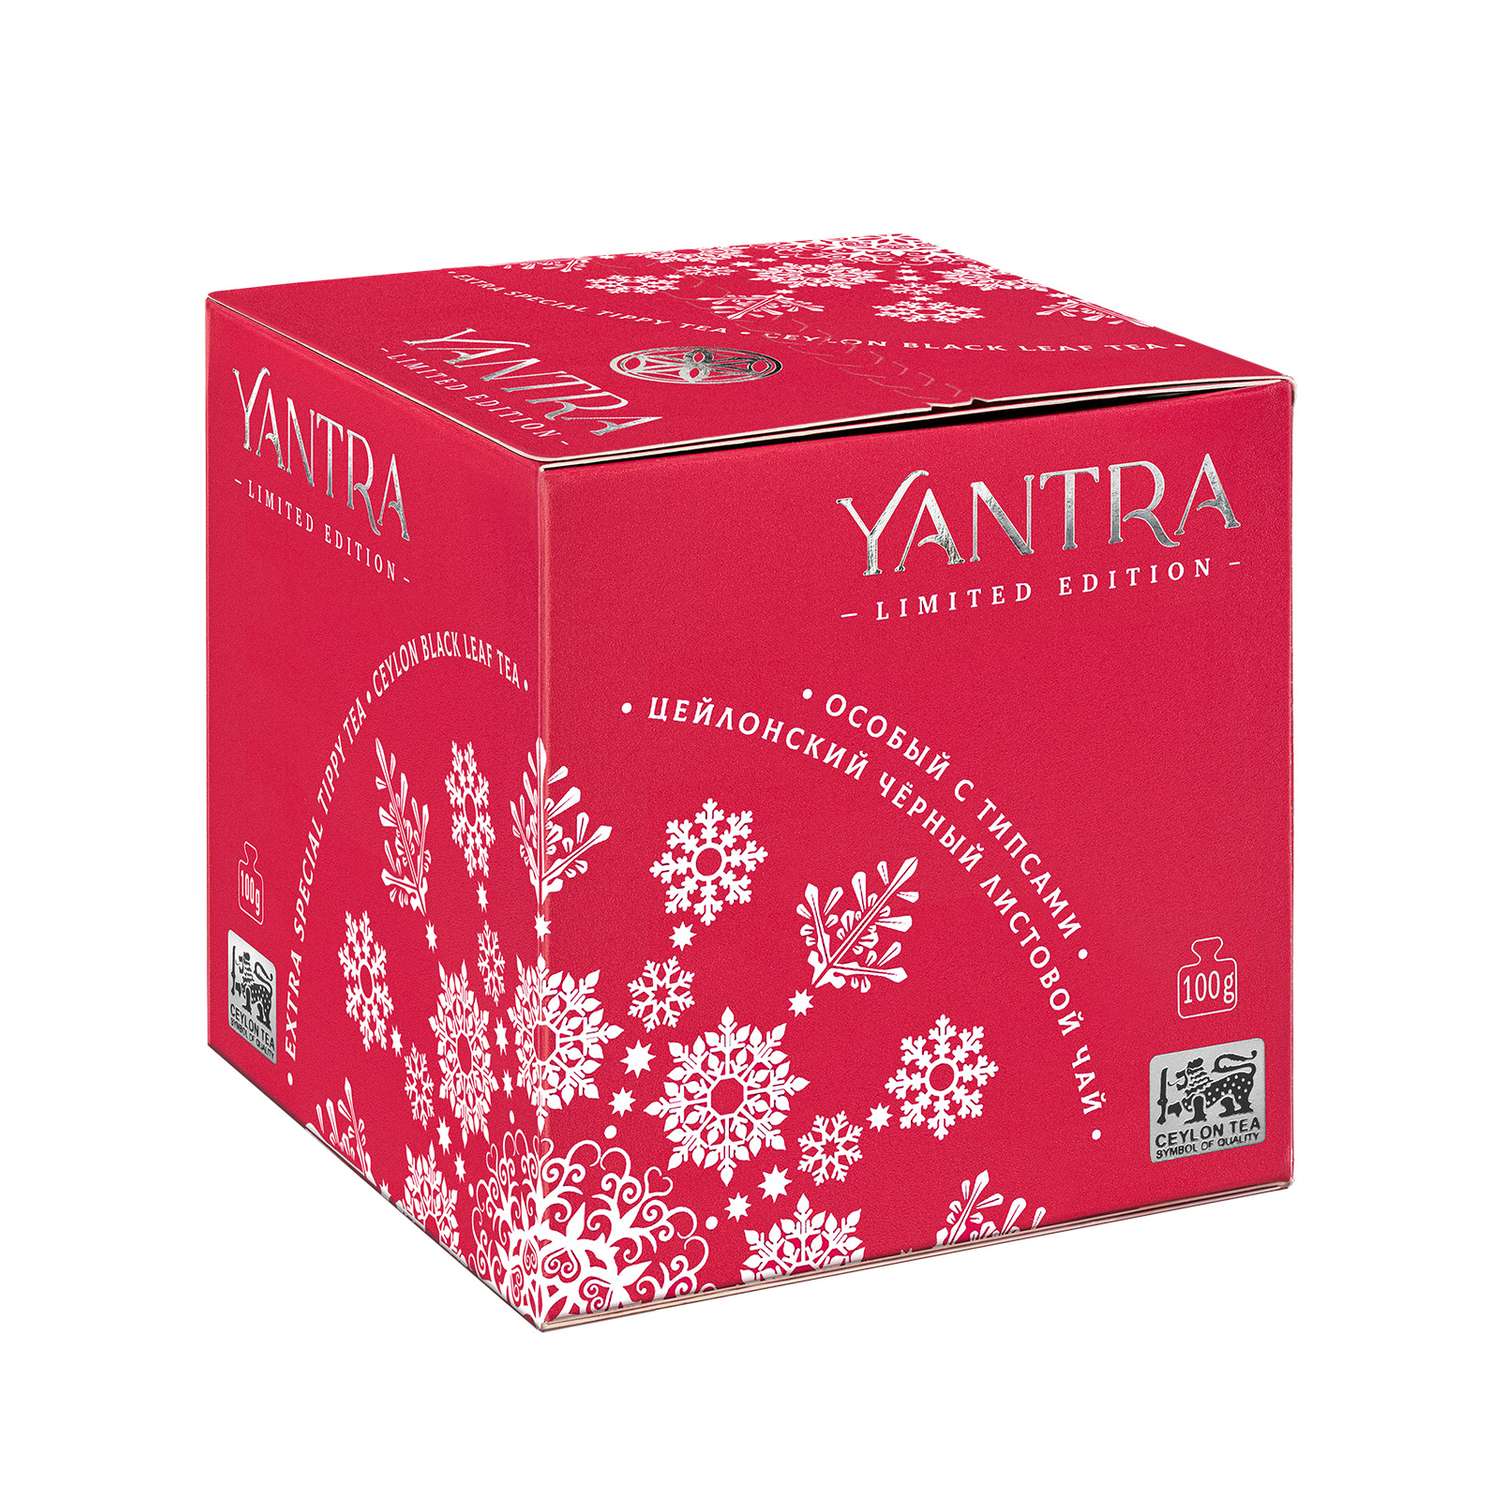 Чай Limited Edition Yantra чёрный лист с типсами стандарт Extra Special Tippy Tea 100 г - фото 1